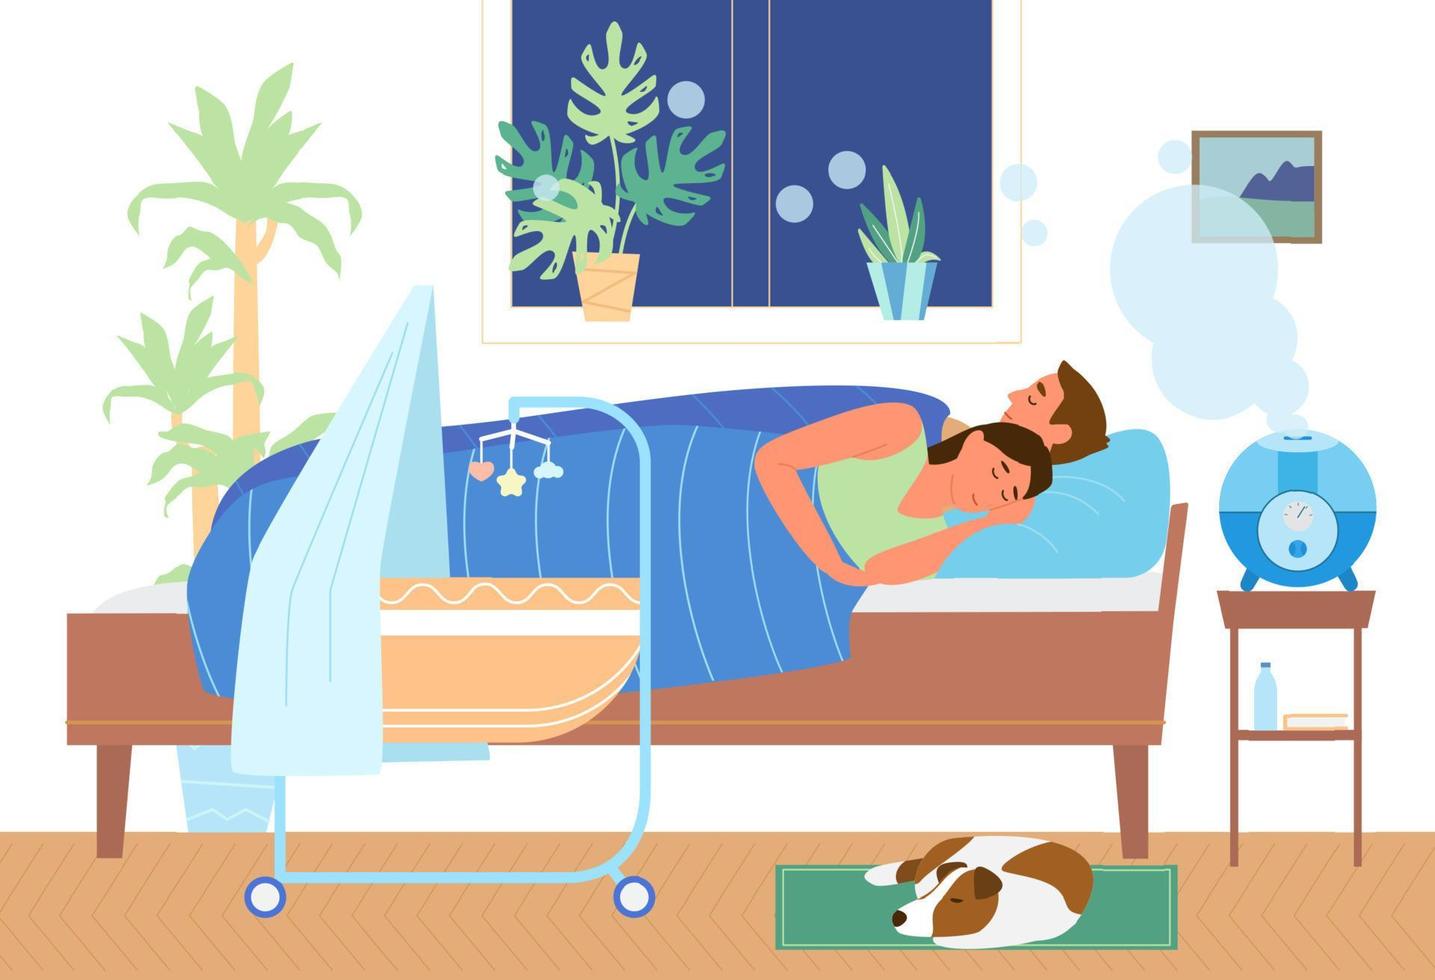 umidificador de ar ultrassônico trabalhando no quarto com a família dormindo. casal na cama perto do berço, cachorro dormindo. ilustração vetorial. vetor